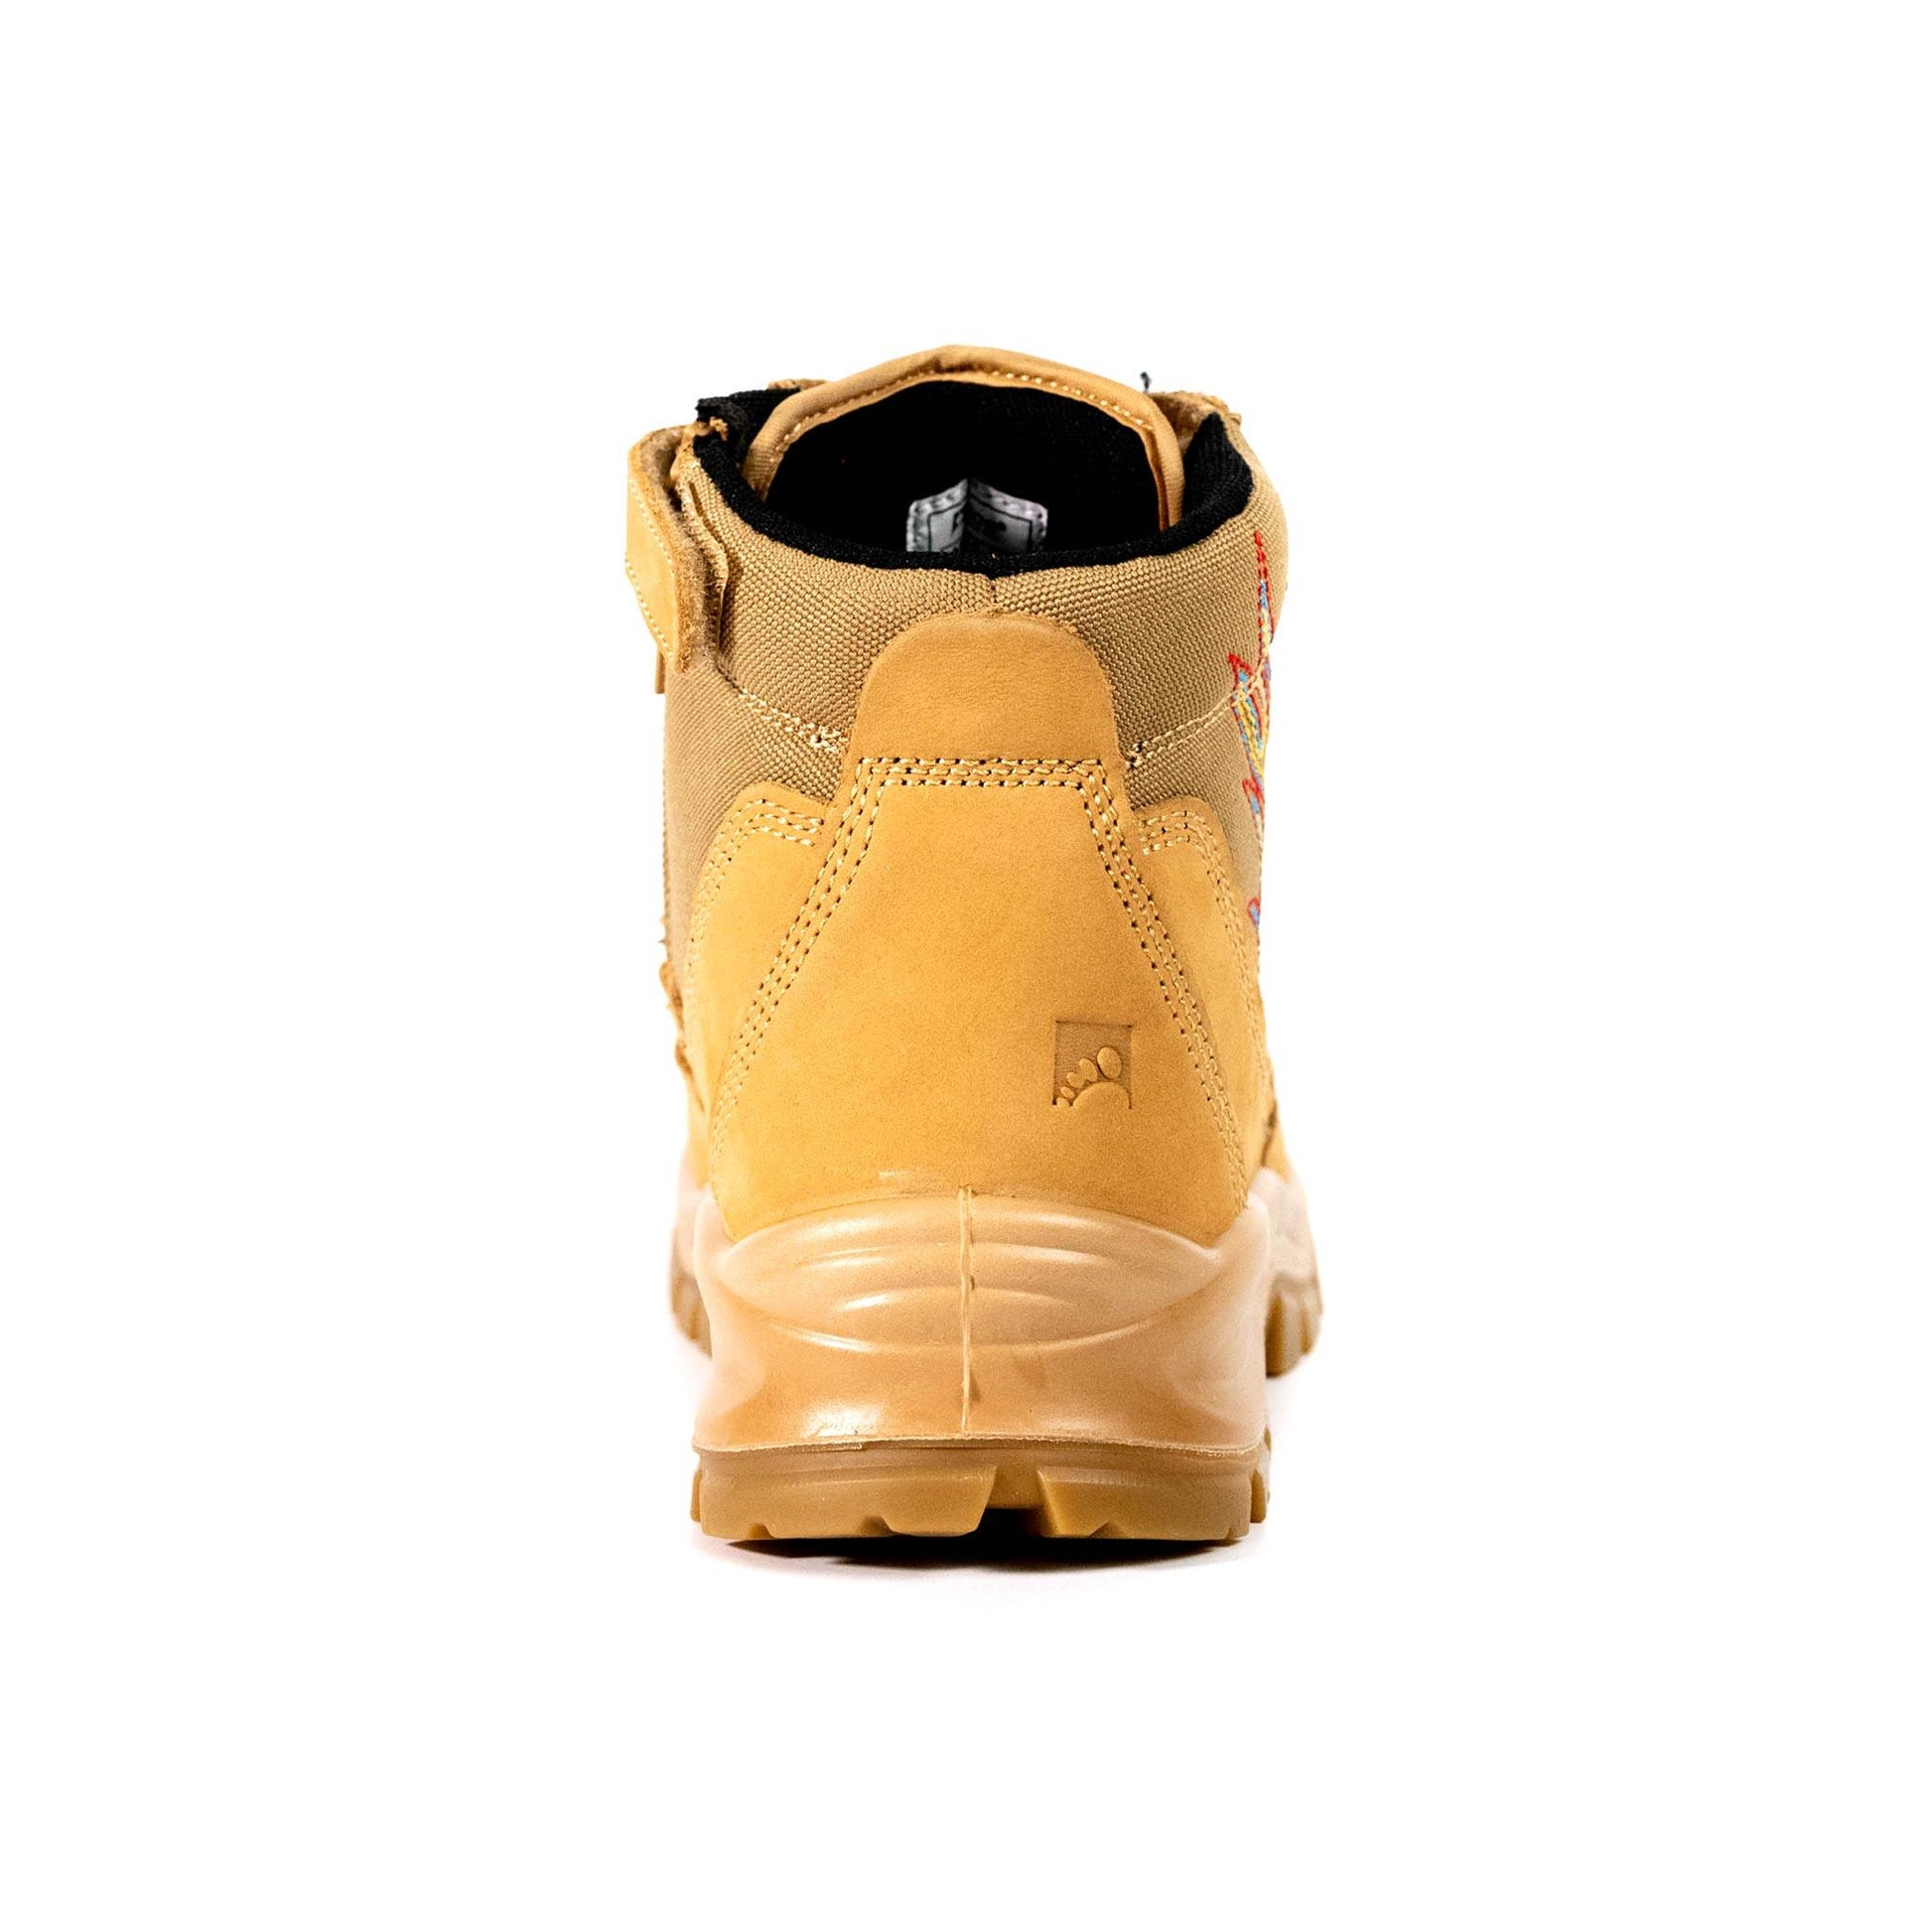 Men's 6" Steel Toe Boots - EH Safety | S001 - USINE PRO Footwear